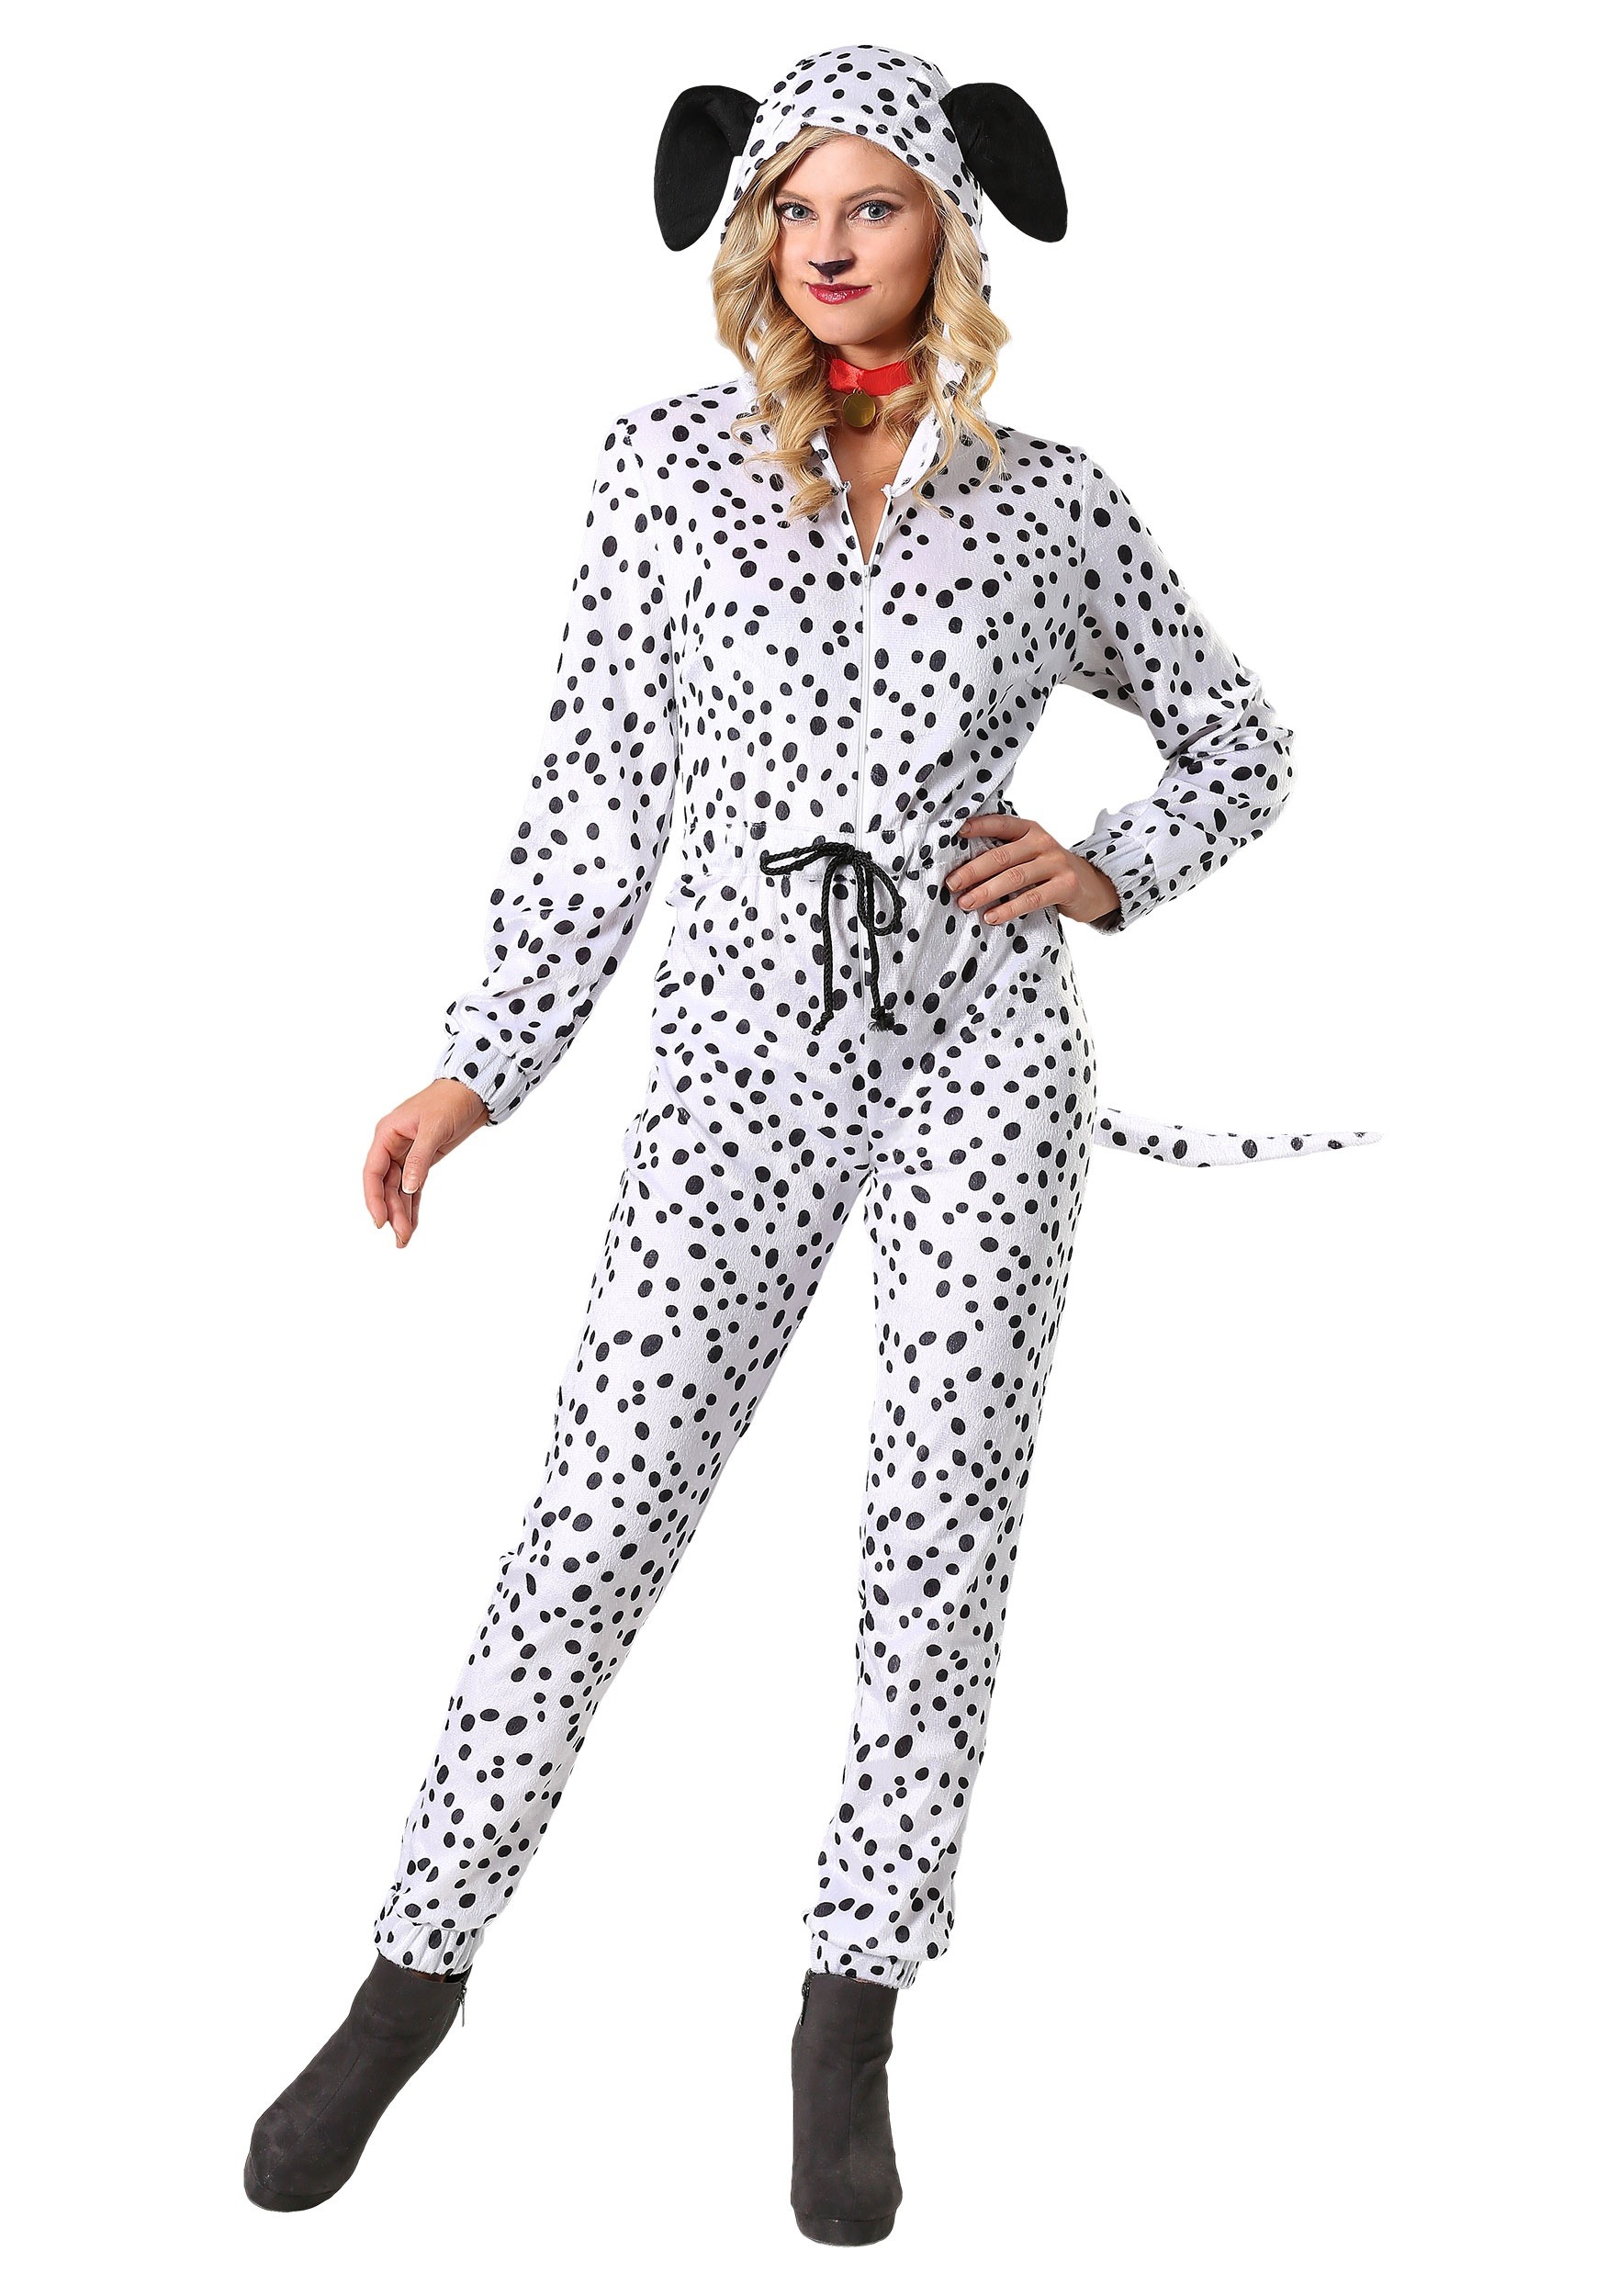 Plus Size Cozy Dalmatian Jumpsuit Costume for Women